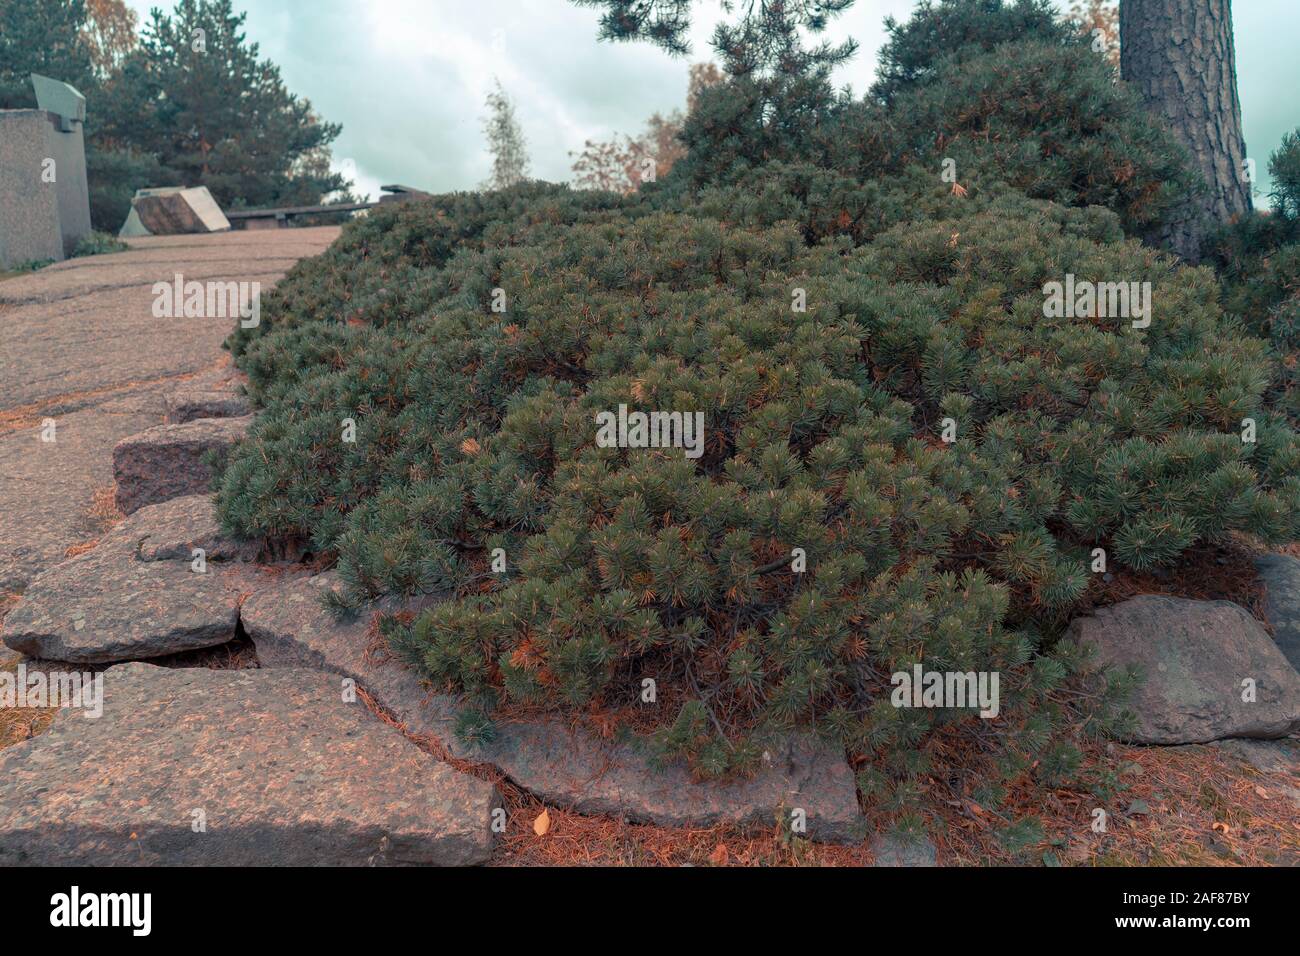 Nadelholz kriechende Wacholder wächst auf Rock, Fichte, Tanne, Kiefer, Landschaftsgestaltung in Finnland Park. Stockfoto